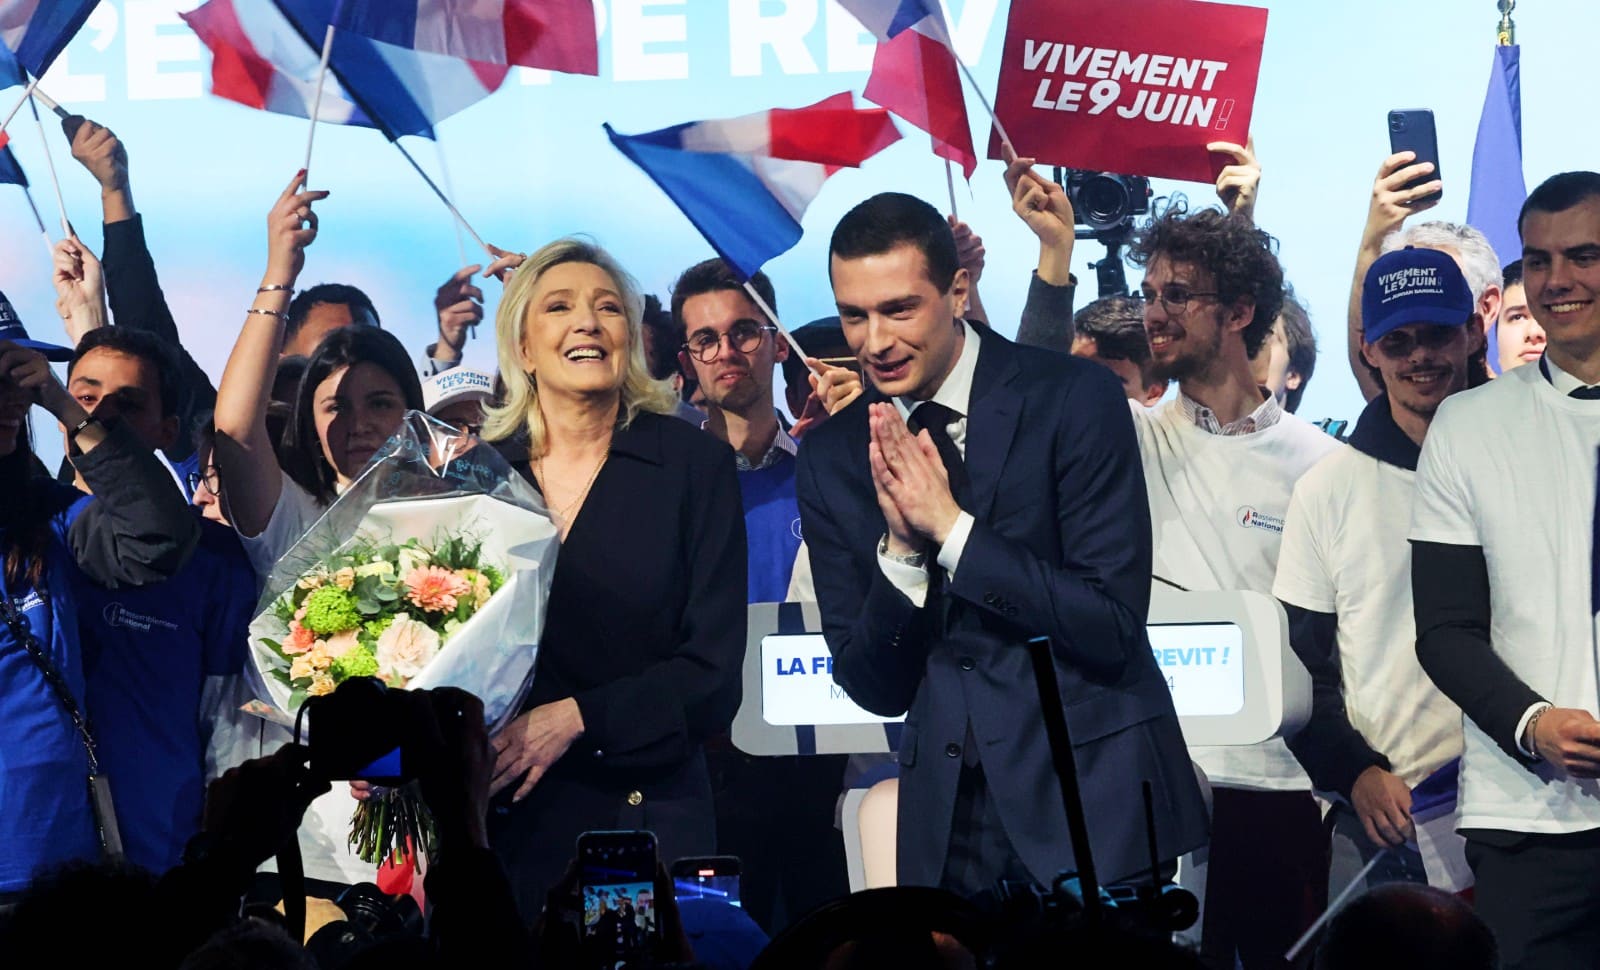 Élections européennes: pourquoi il ne faut pas mettre tous les eurosceptiques dans le même sac